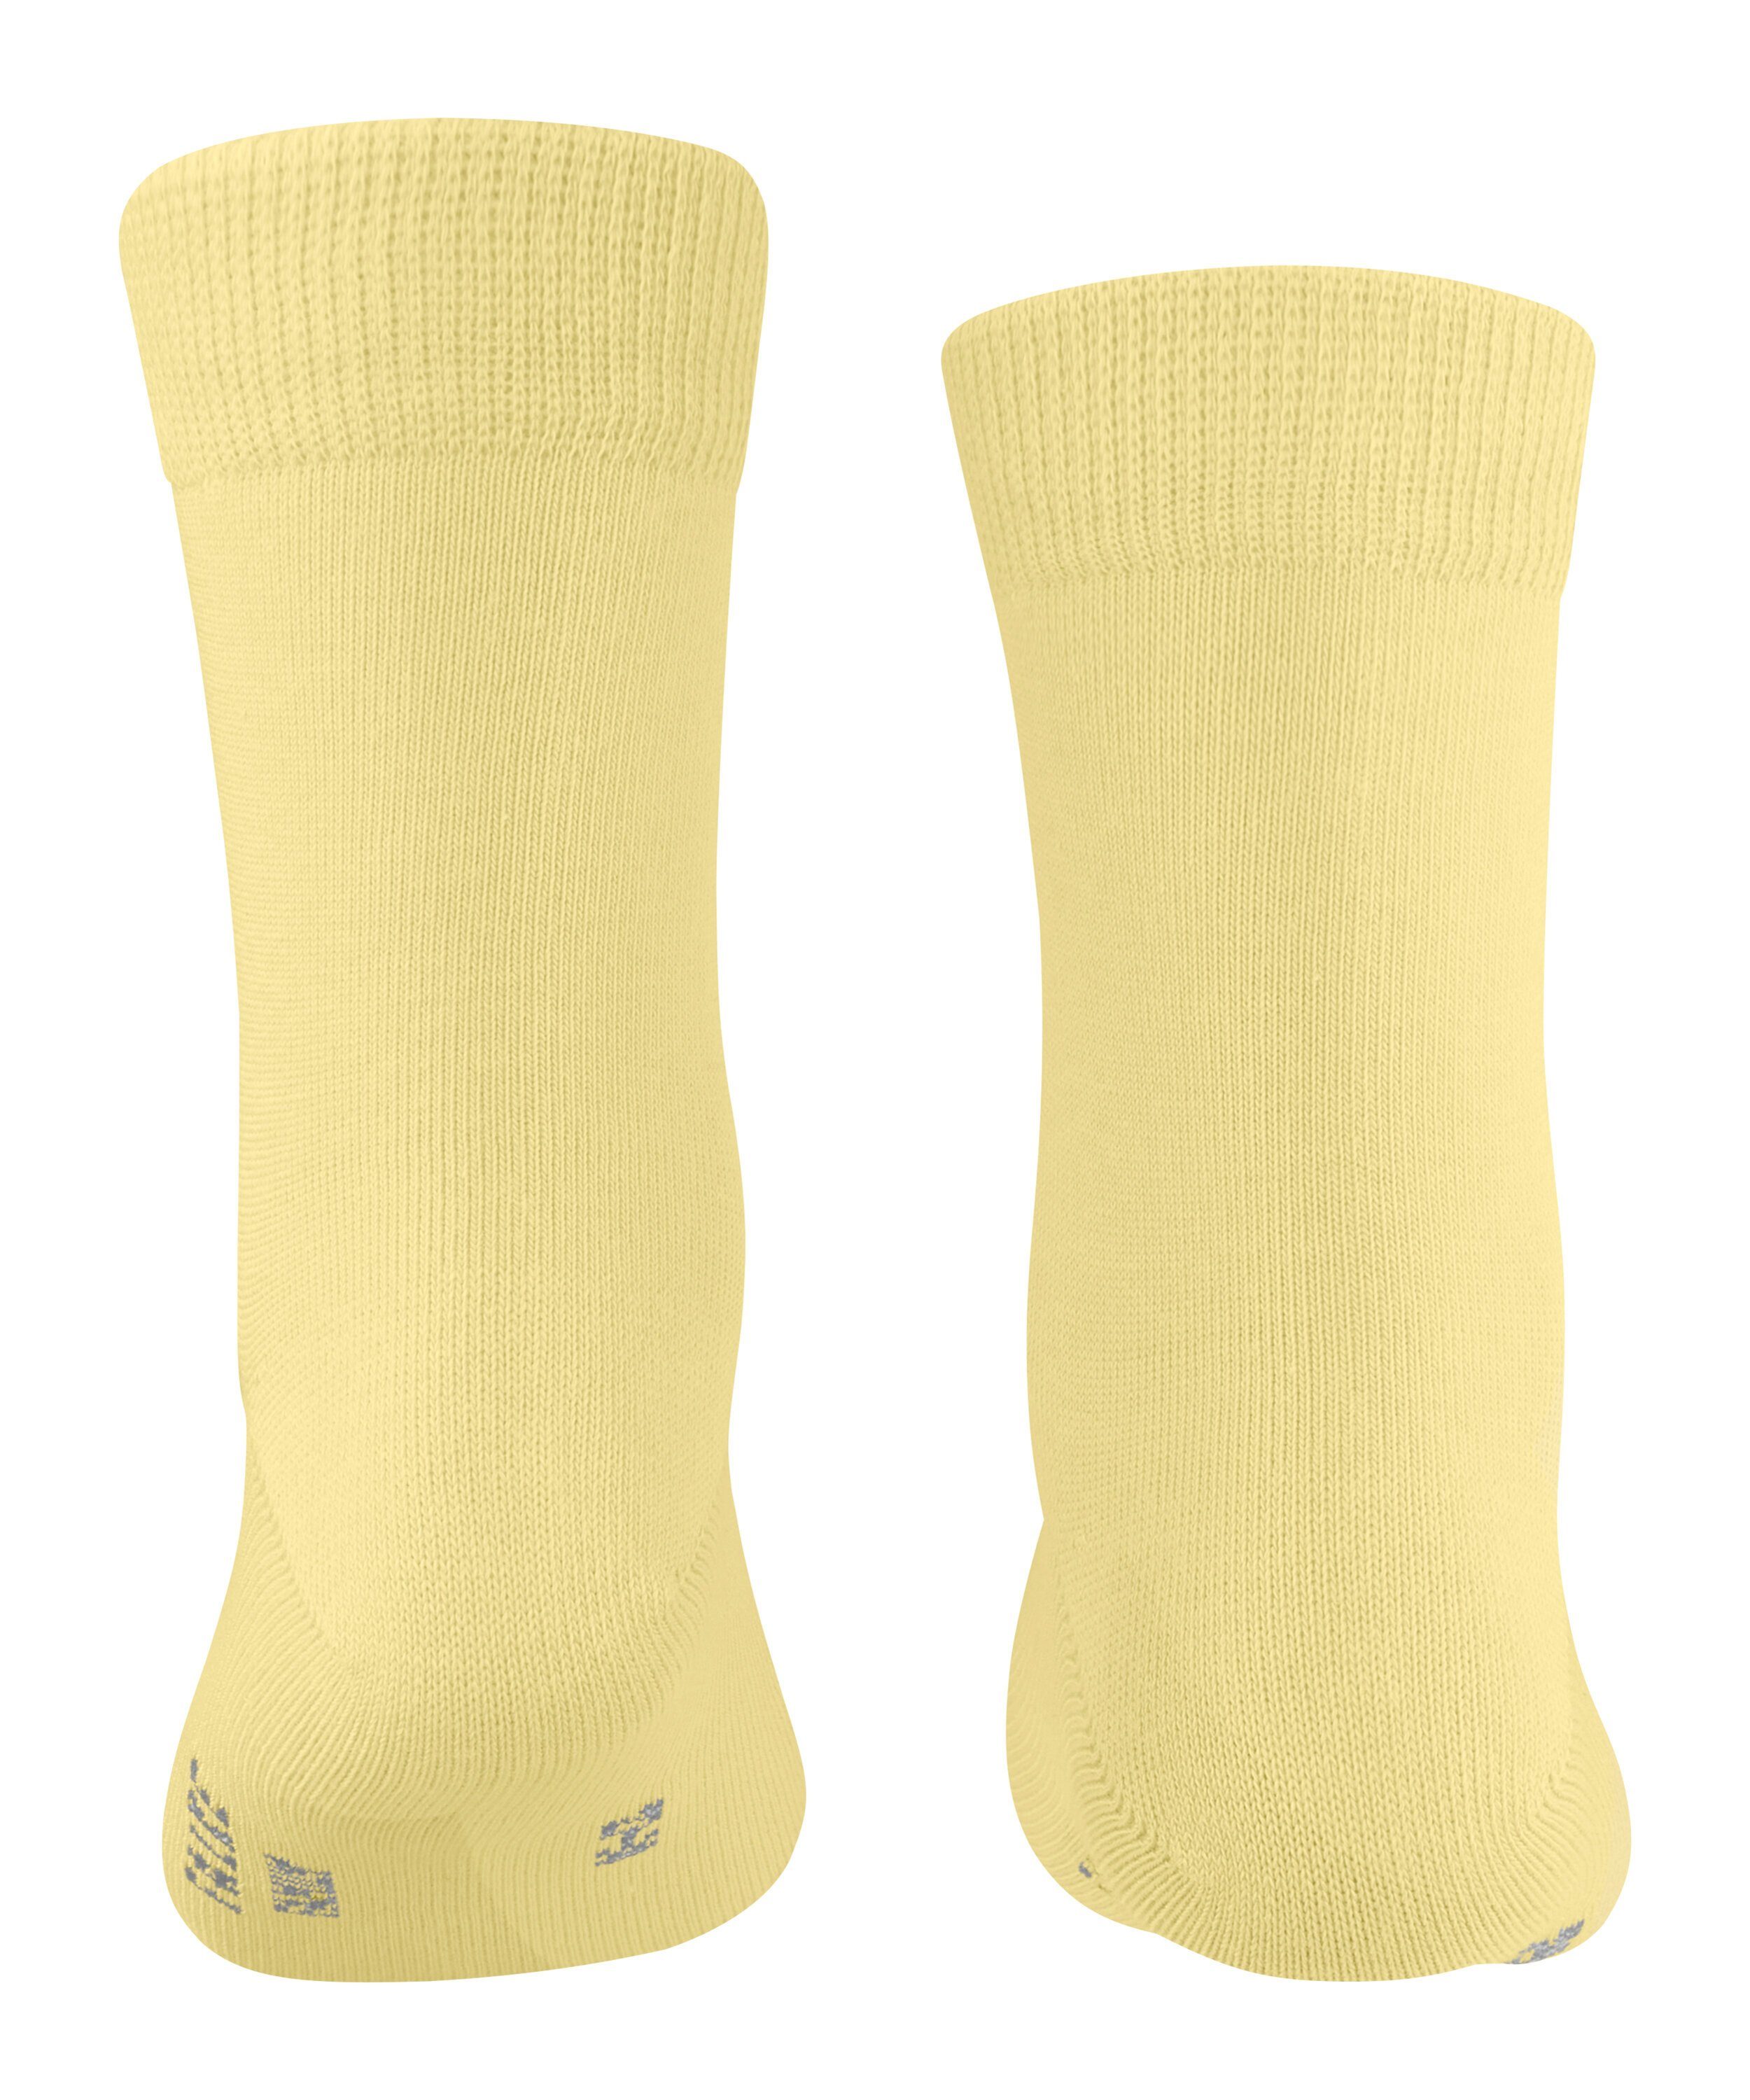 (1105) (1-Paar) FALKE Family Socken hay